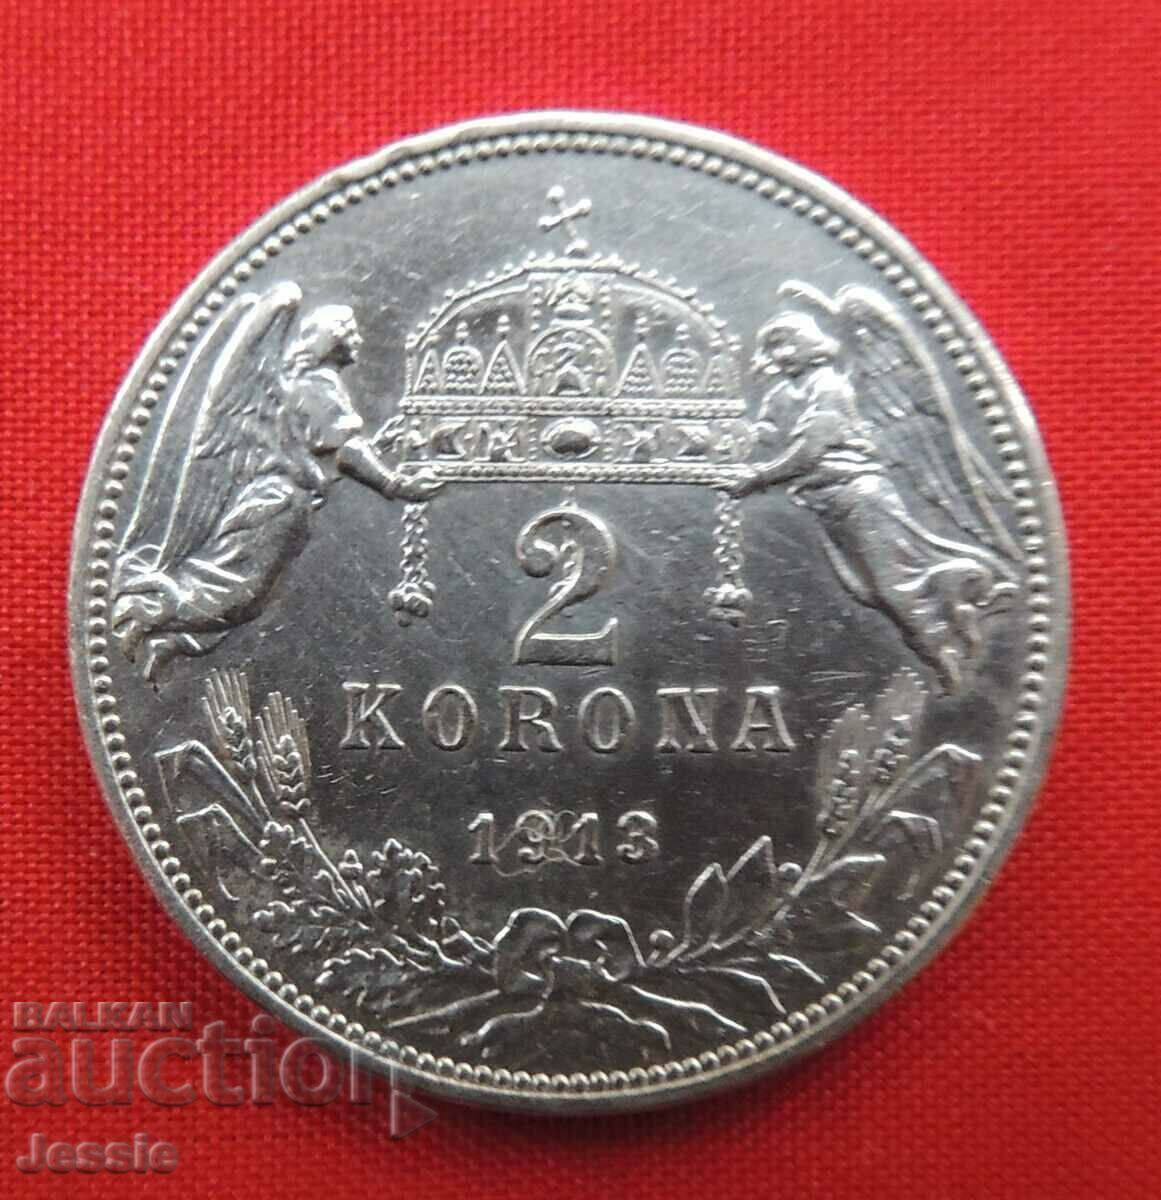 2 Korona 1913 Austria-Hungary / Hungary / Compare and Rate!